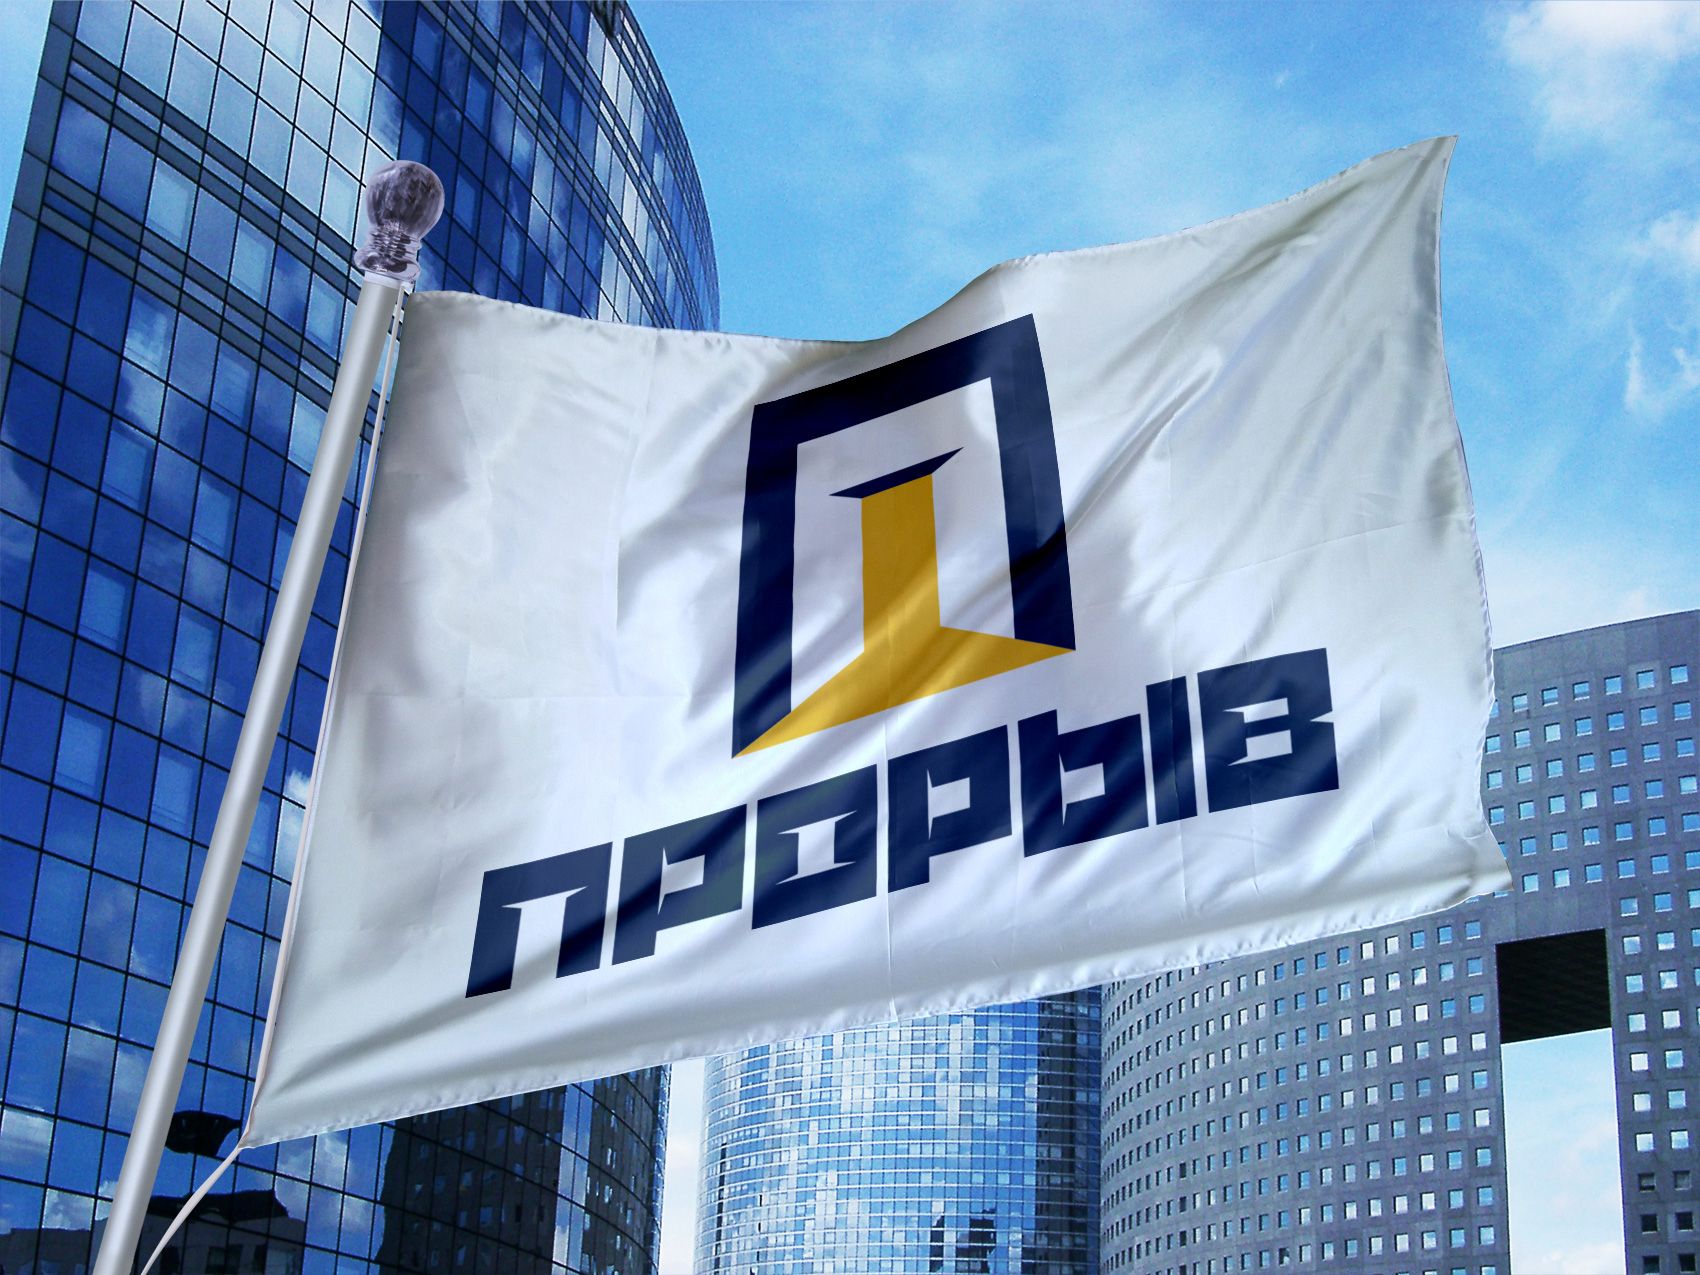 Логотип для политической партии в Украине - дизайнер Advokat72